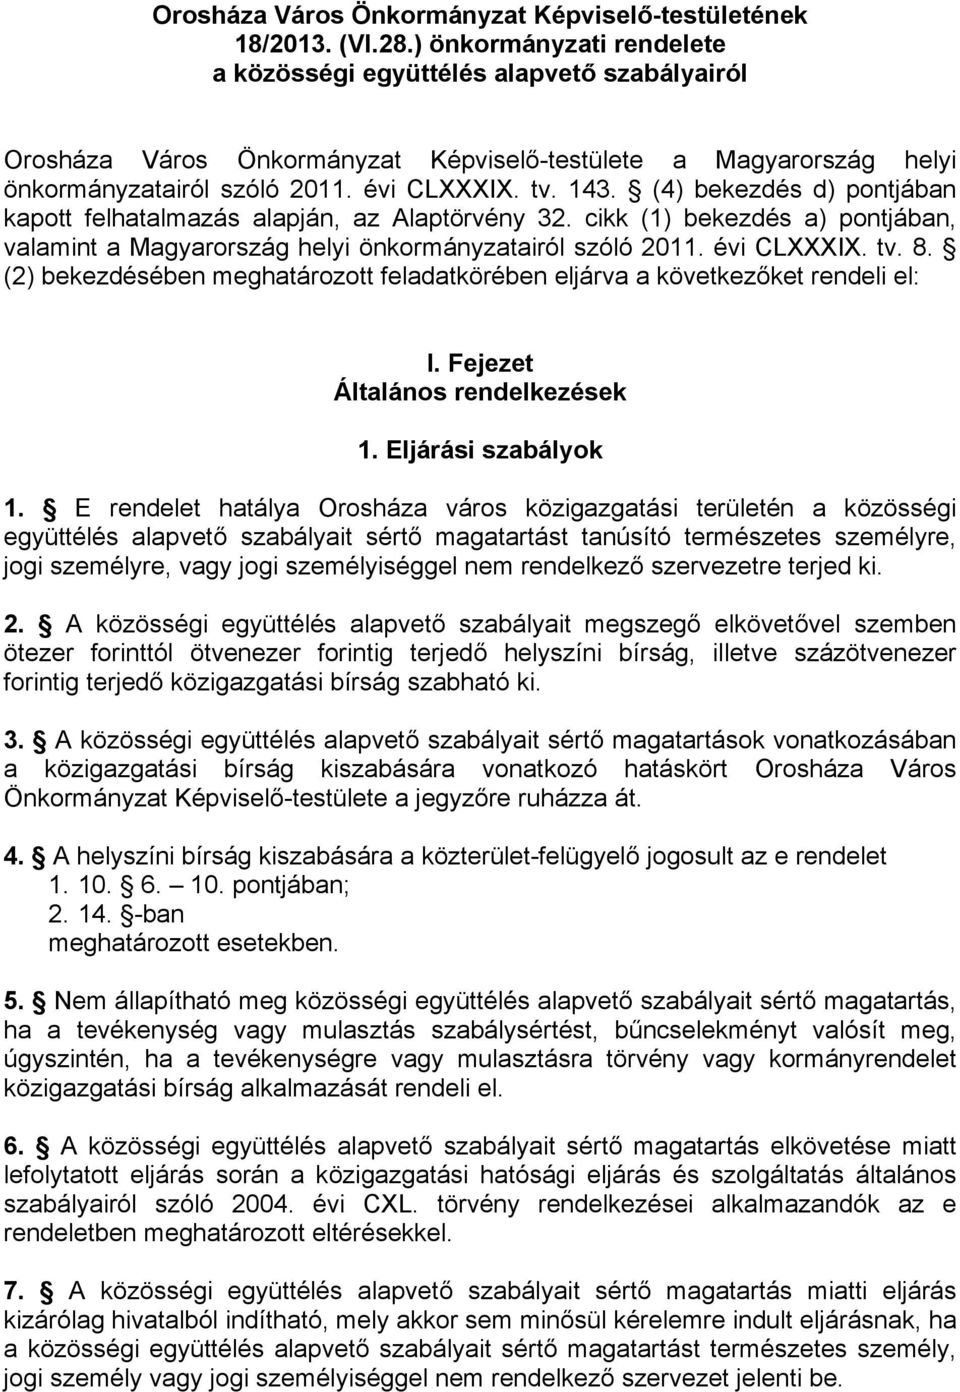 (4) bekezdés d) pontjában kapott felhatalmazás alapján, az Alaptörvény 32. cikk (1) bekezdés a) pontjában, valamint a Magyarország helyi önkormányzatairól szóló 2011. évi CLXXXIX. tv. 8.